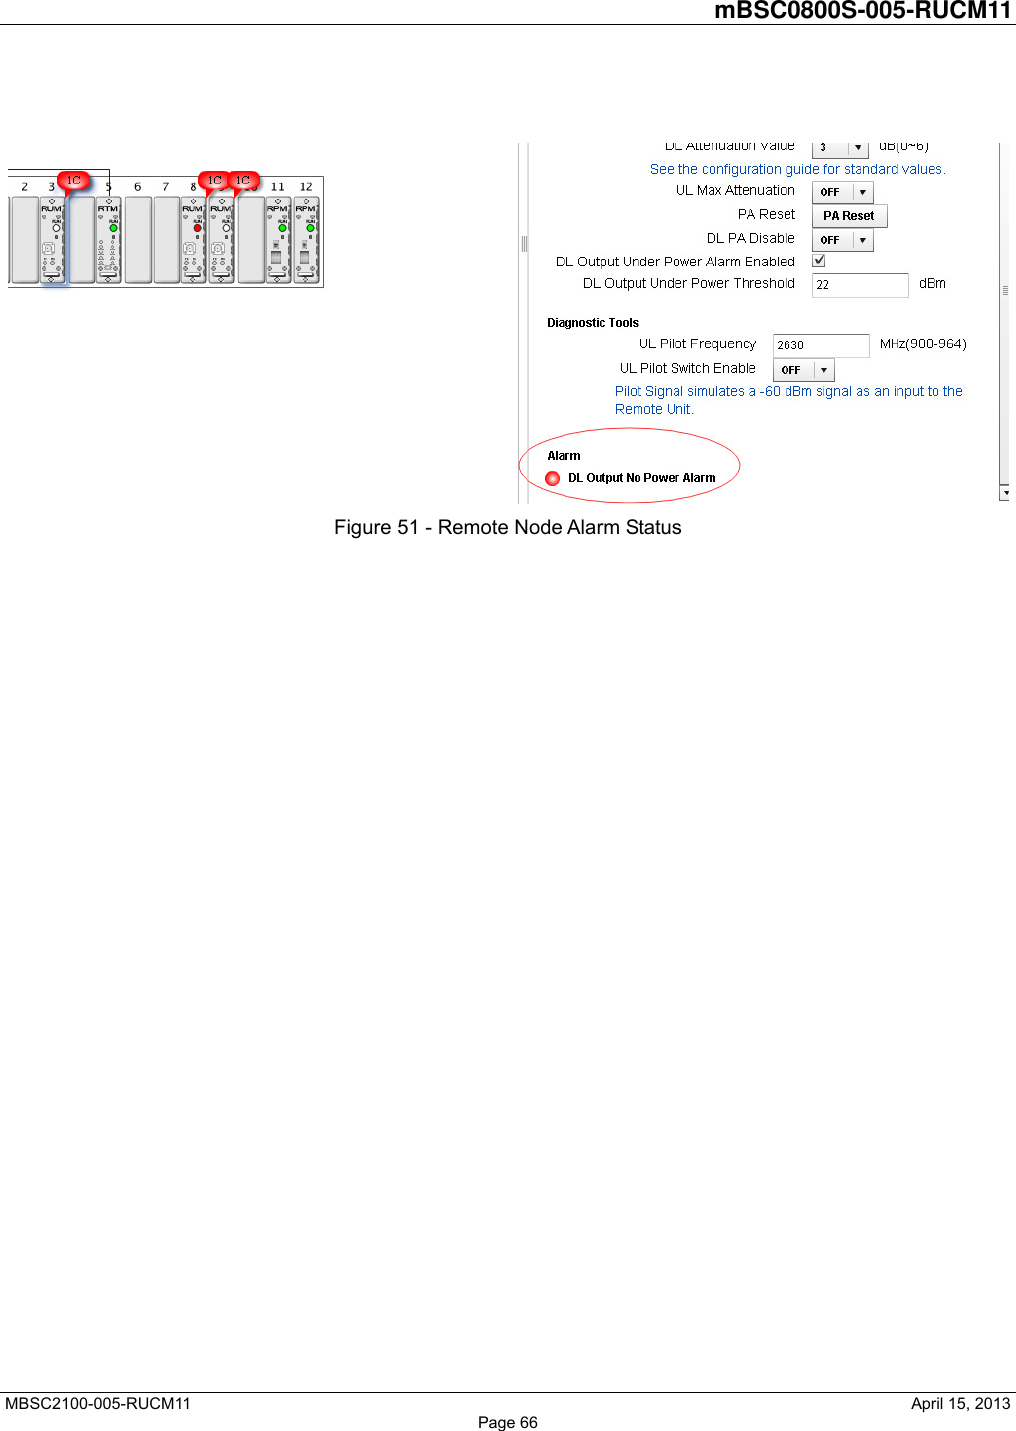         mBSC0800S-005-RUCM11   MBSC2100-005-RUCM11                                              April 15, 2013 Page 66   Figure 51 - Remote Node Alarm Status 